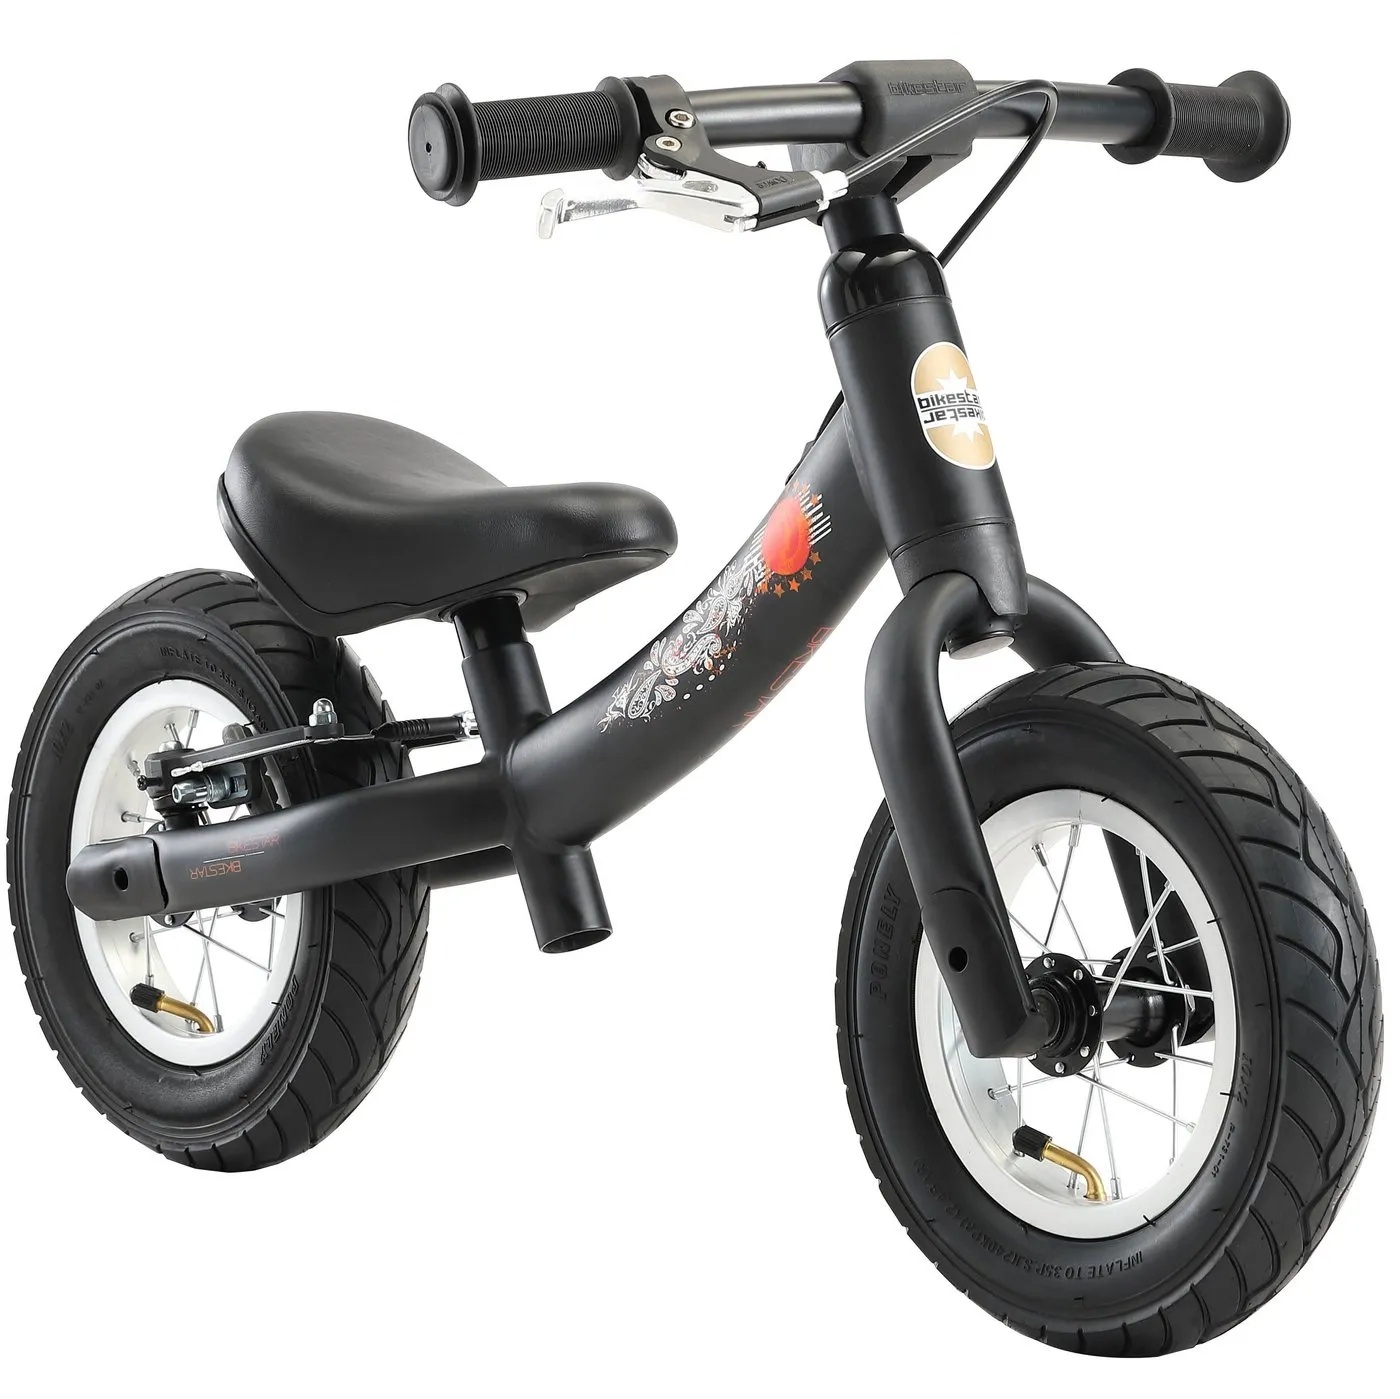 Bikestar Laufrad 10 Zoll, für Kinder von 2-5 Jahren STAR-TRADEMARKS